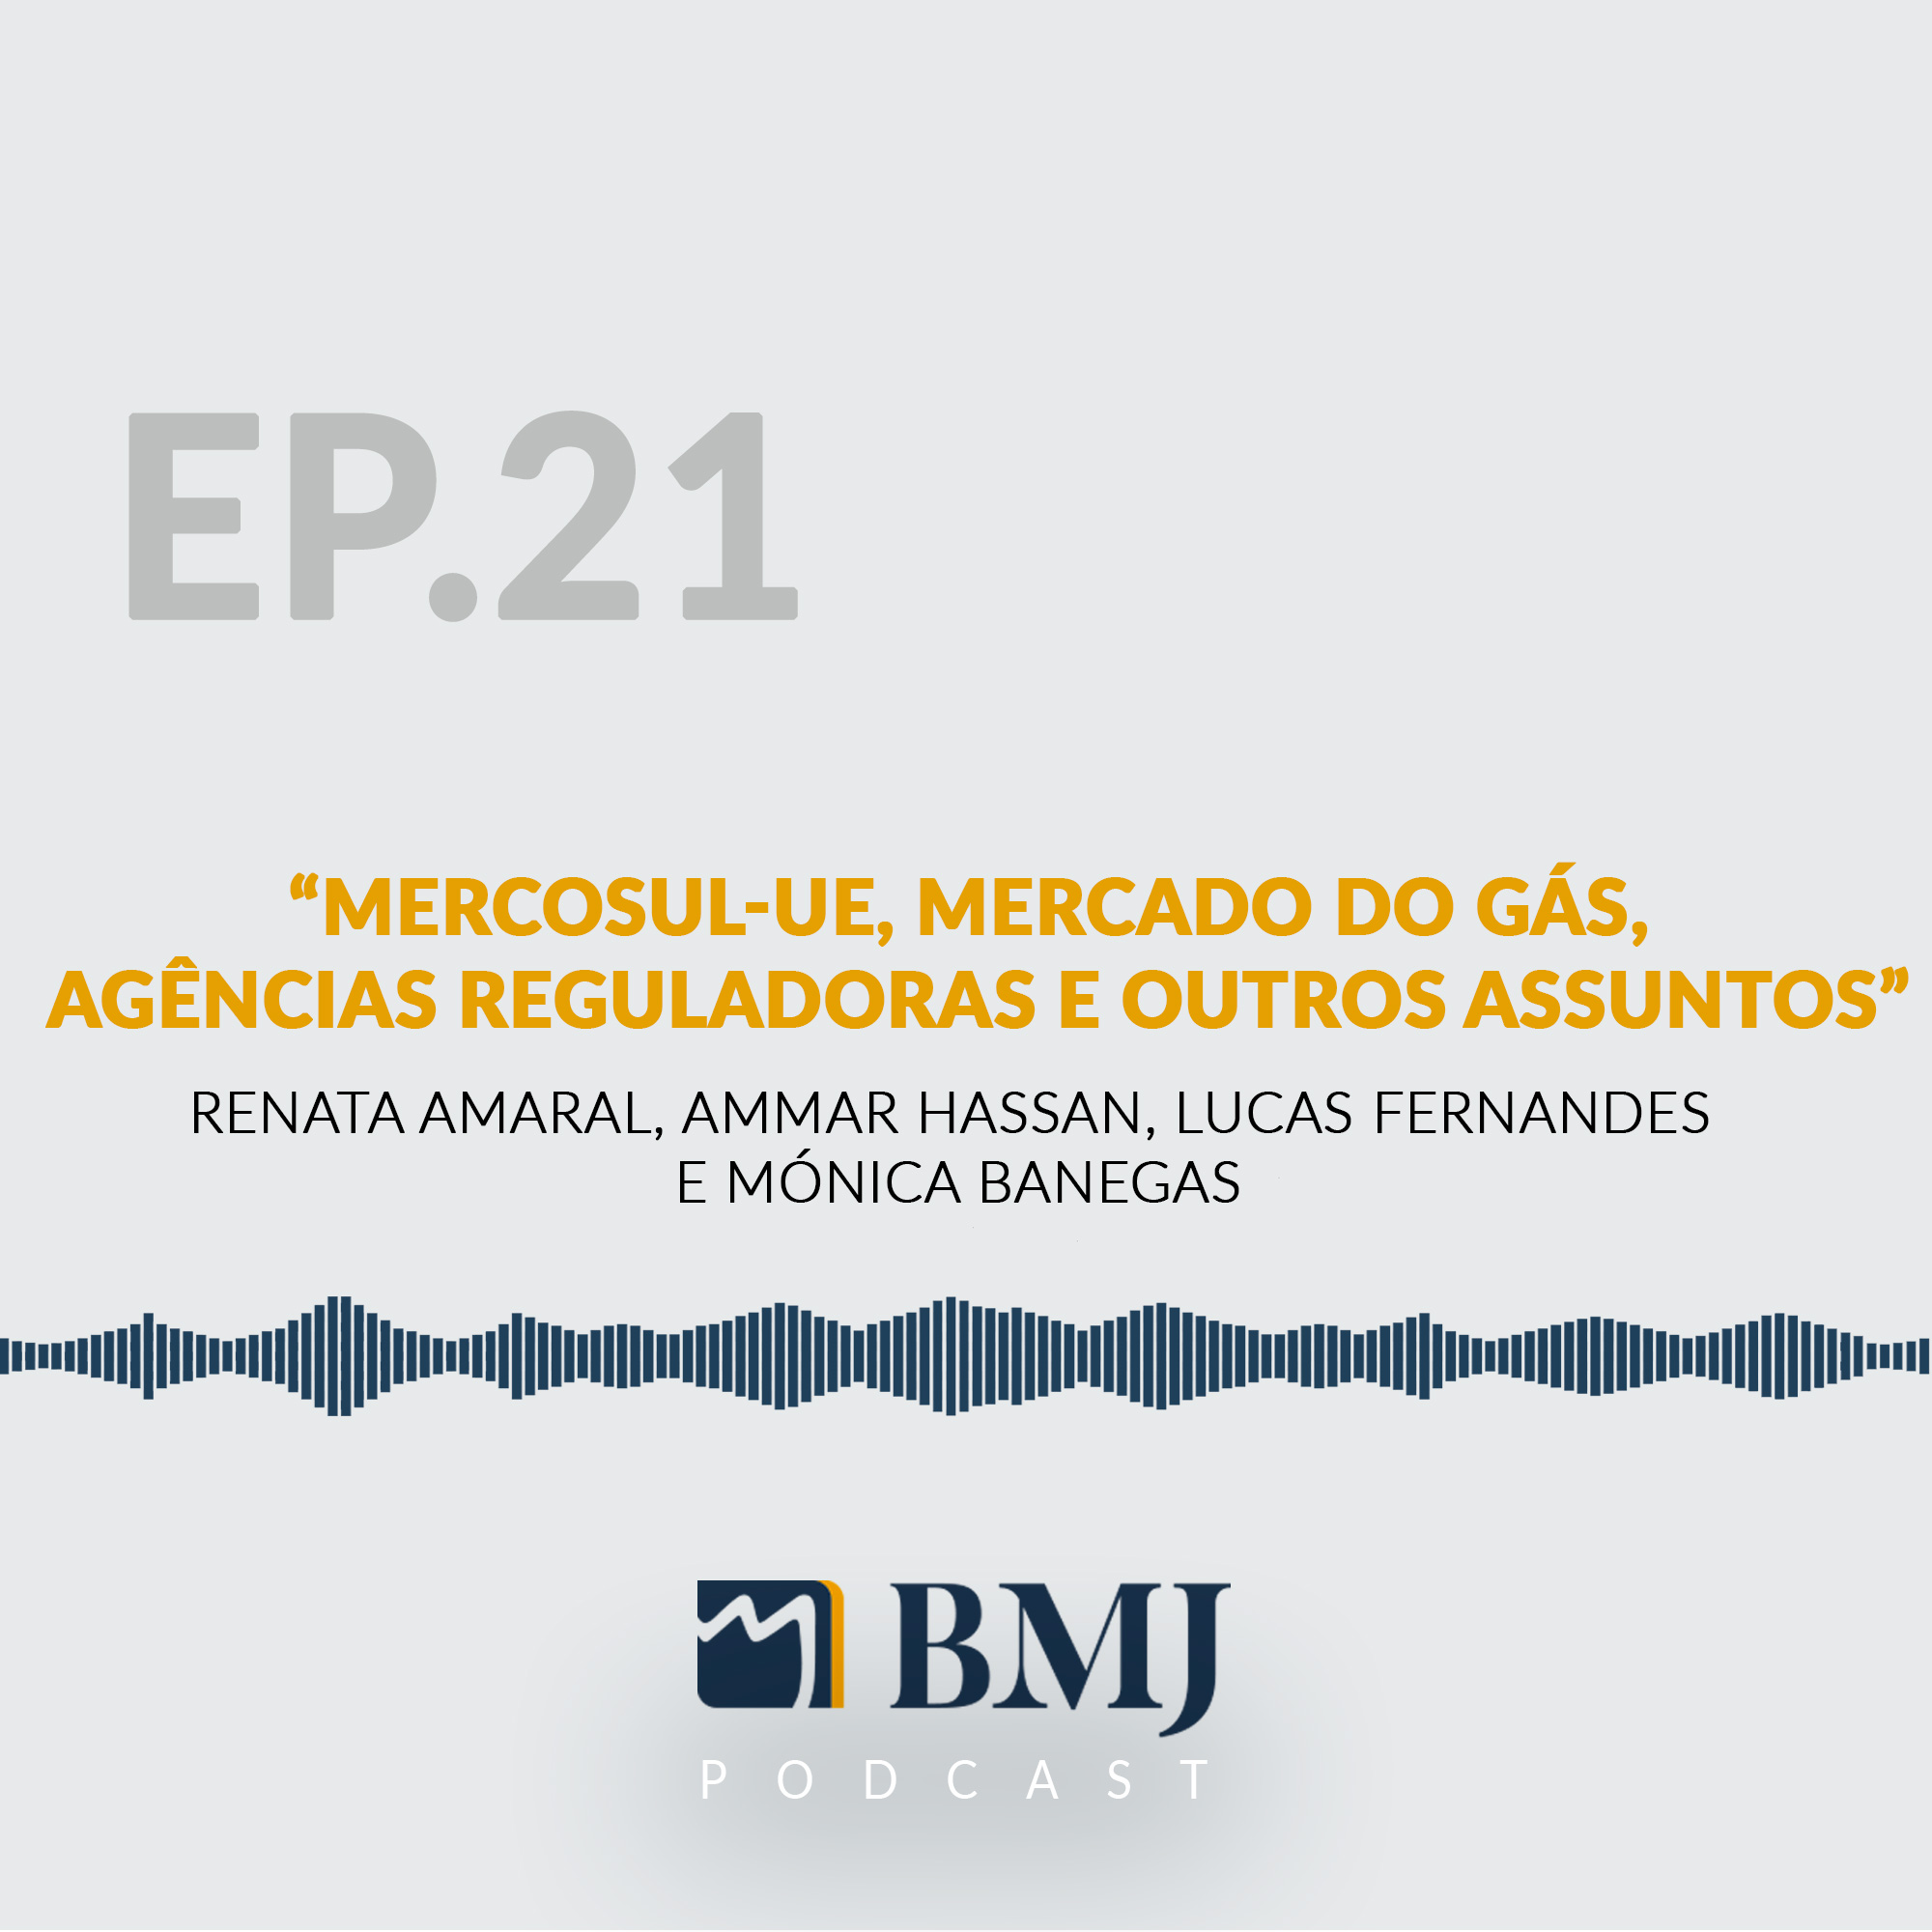 Mercosul-UE, Mercado do Gás, Agências Reguladoras e outros assuntos